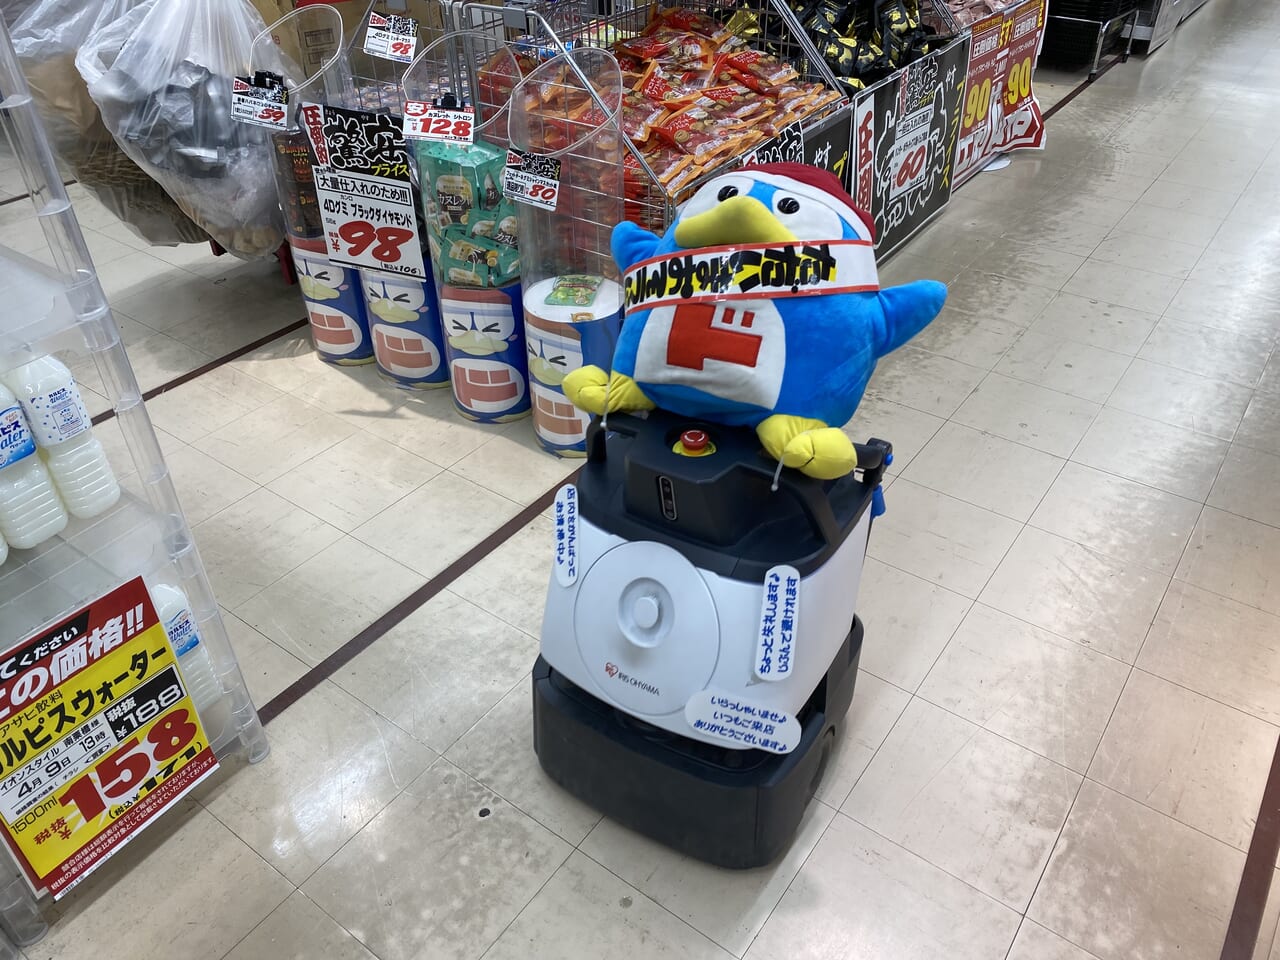 ドンペンくんを乗せて店内を自走するロボット掃除機